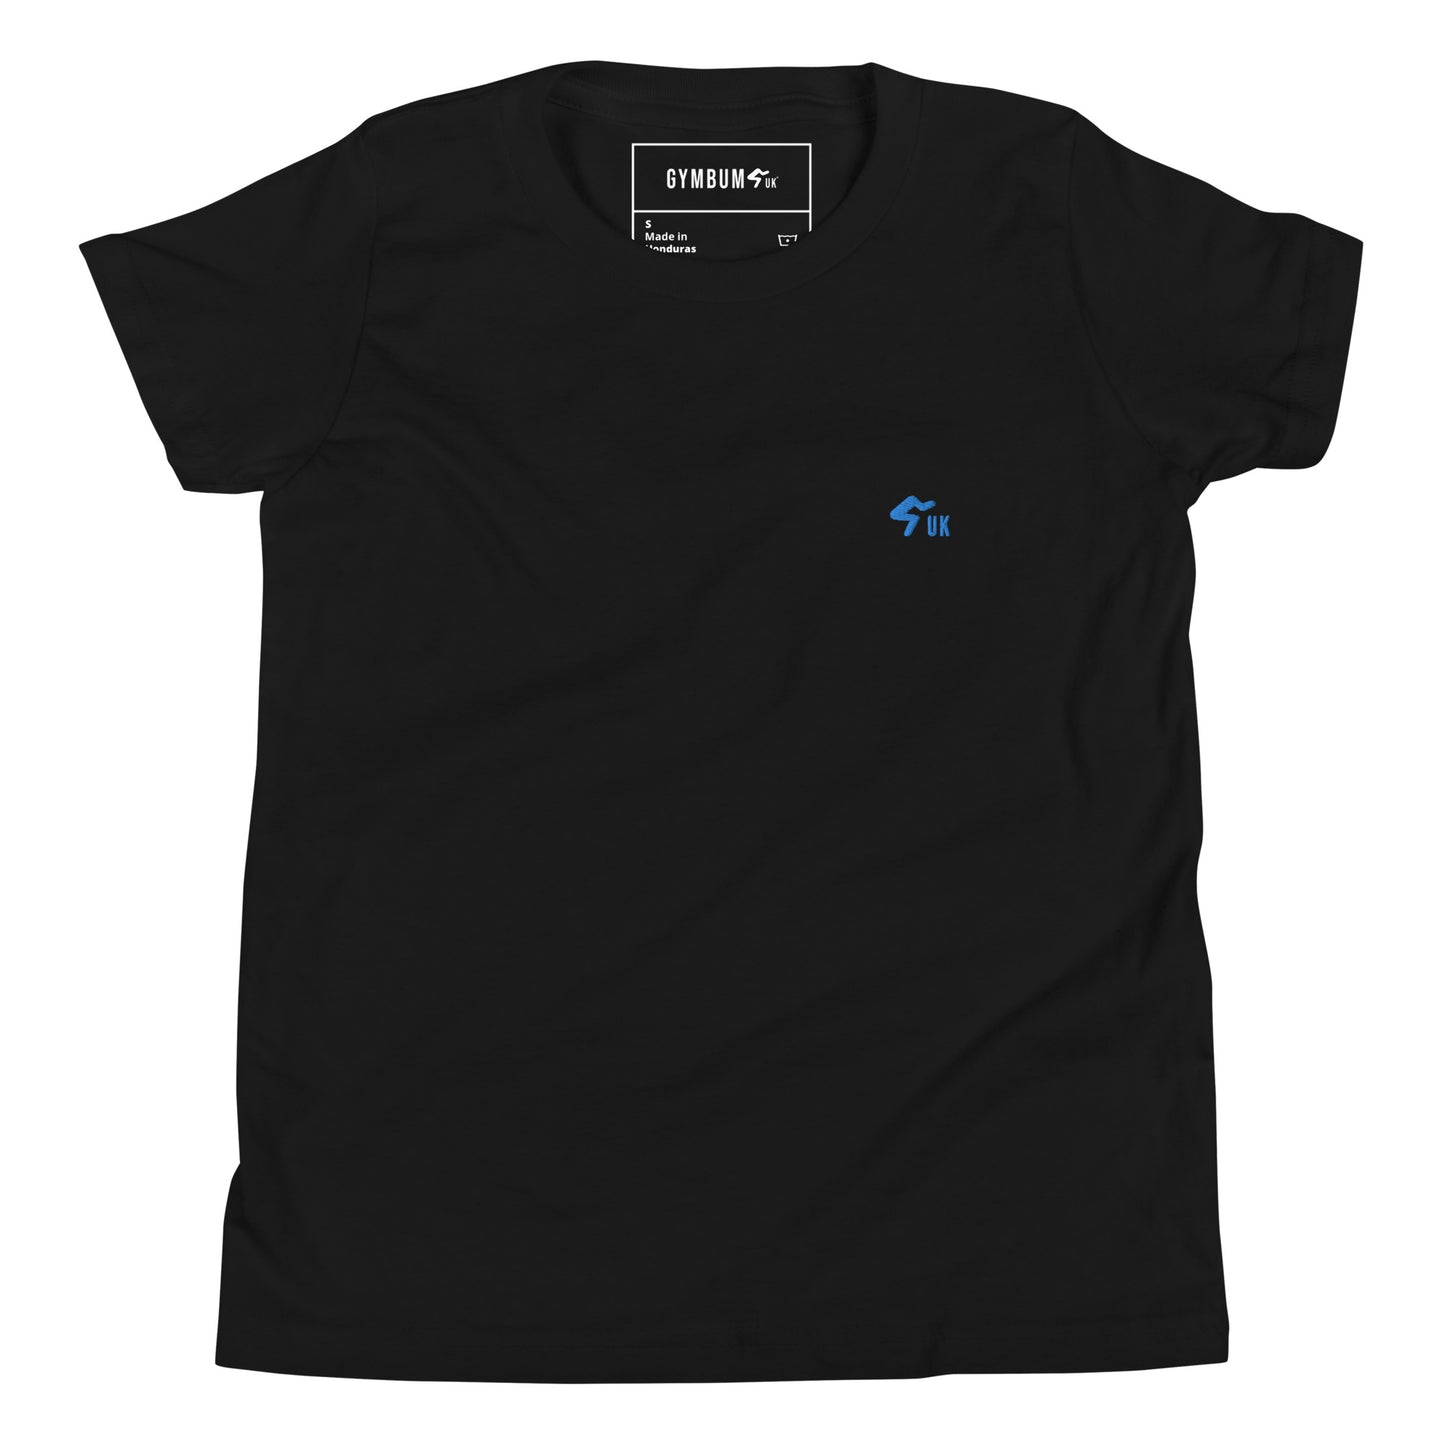 The Gymbum UK Embroidered GUK Aqua Logo Youth Short Sleeve T-Shirt